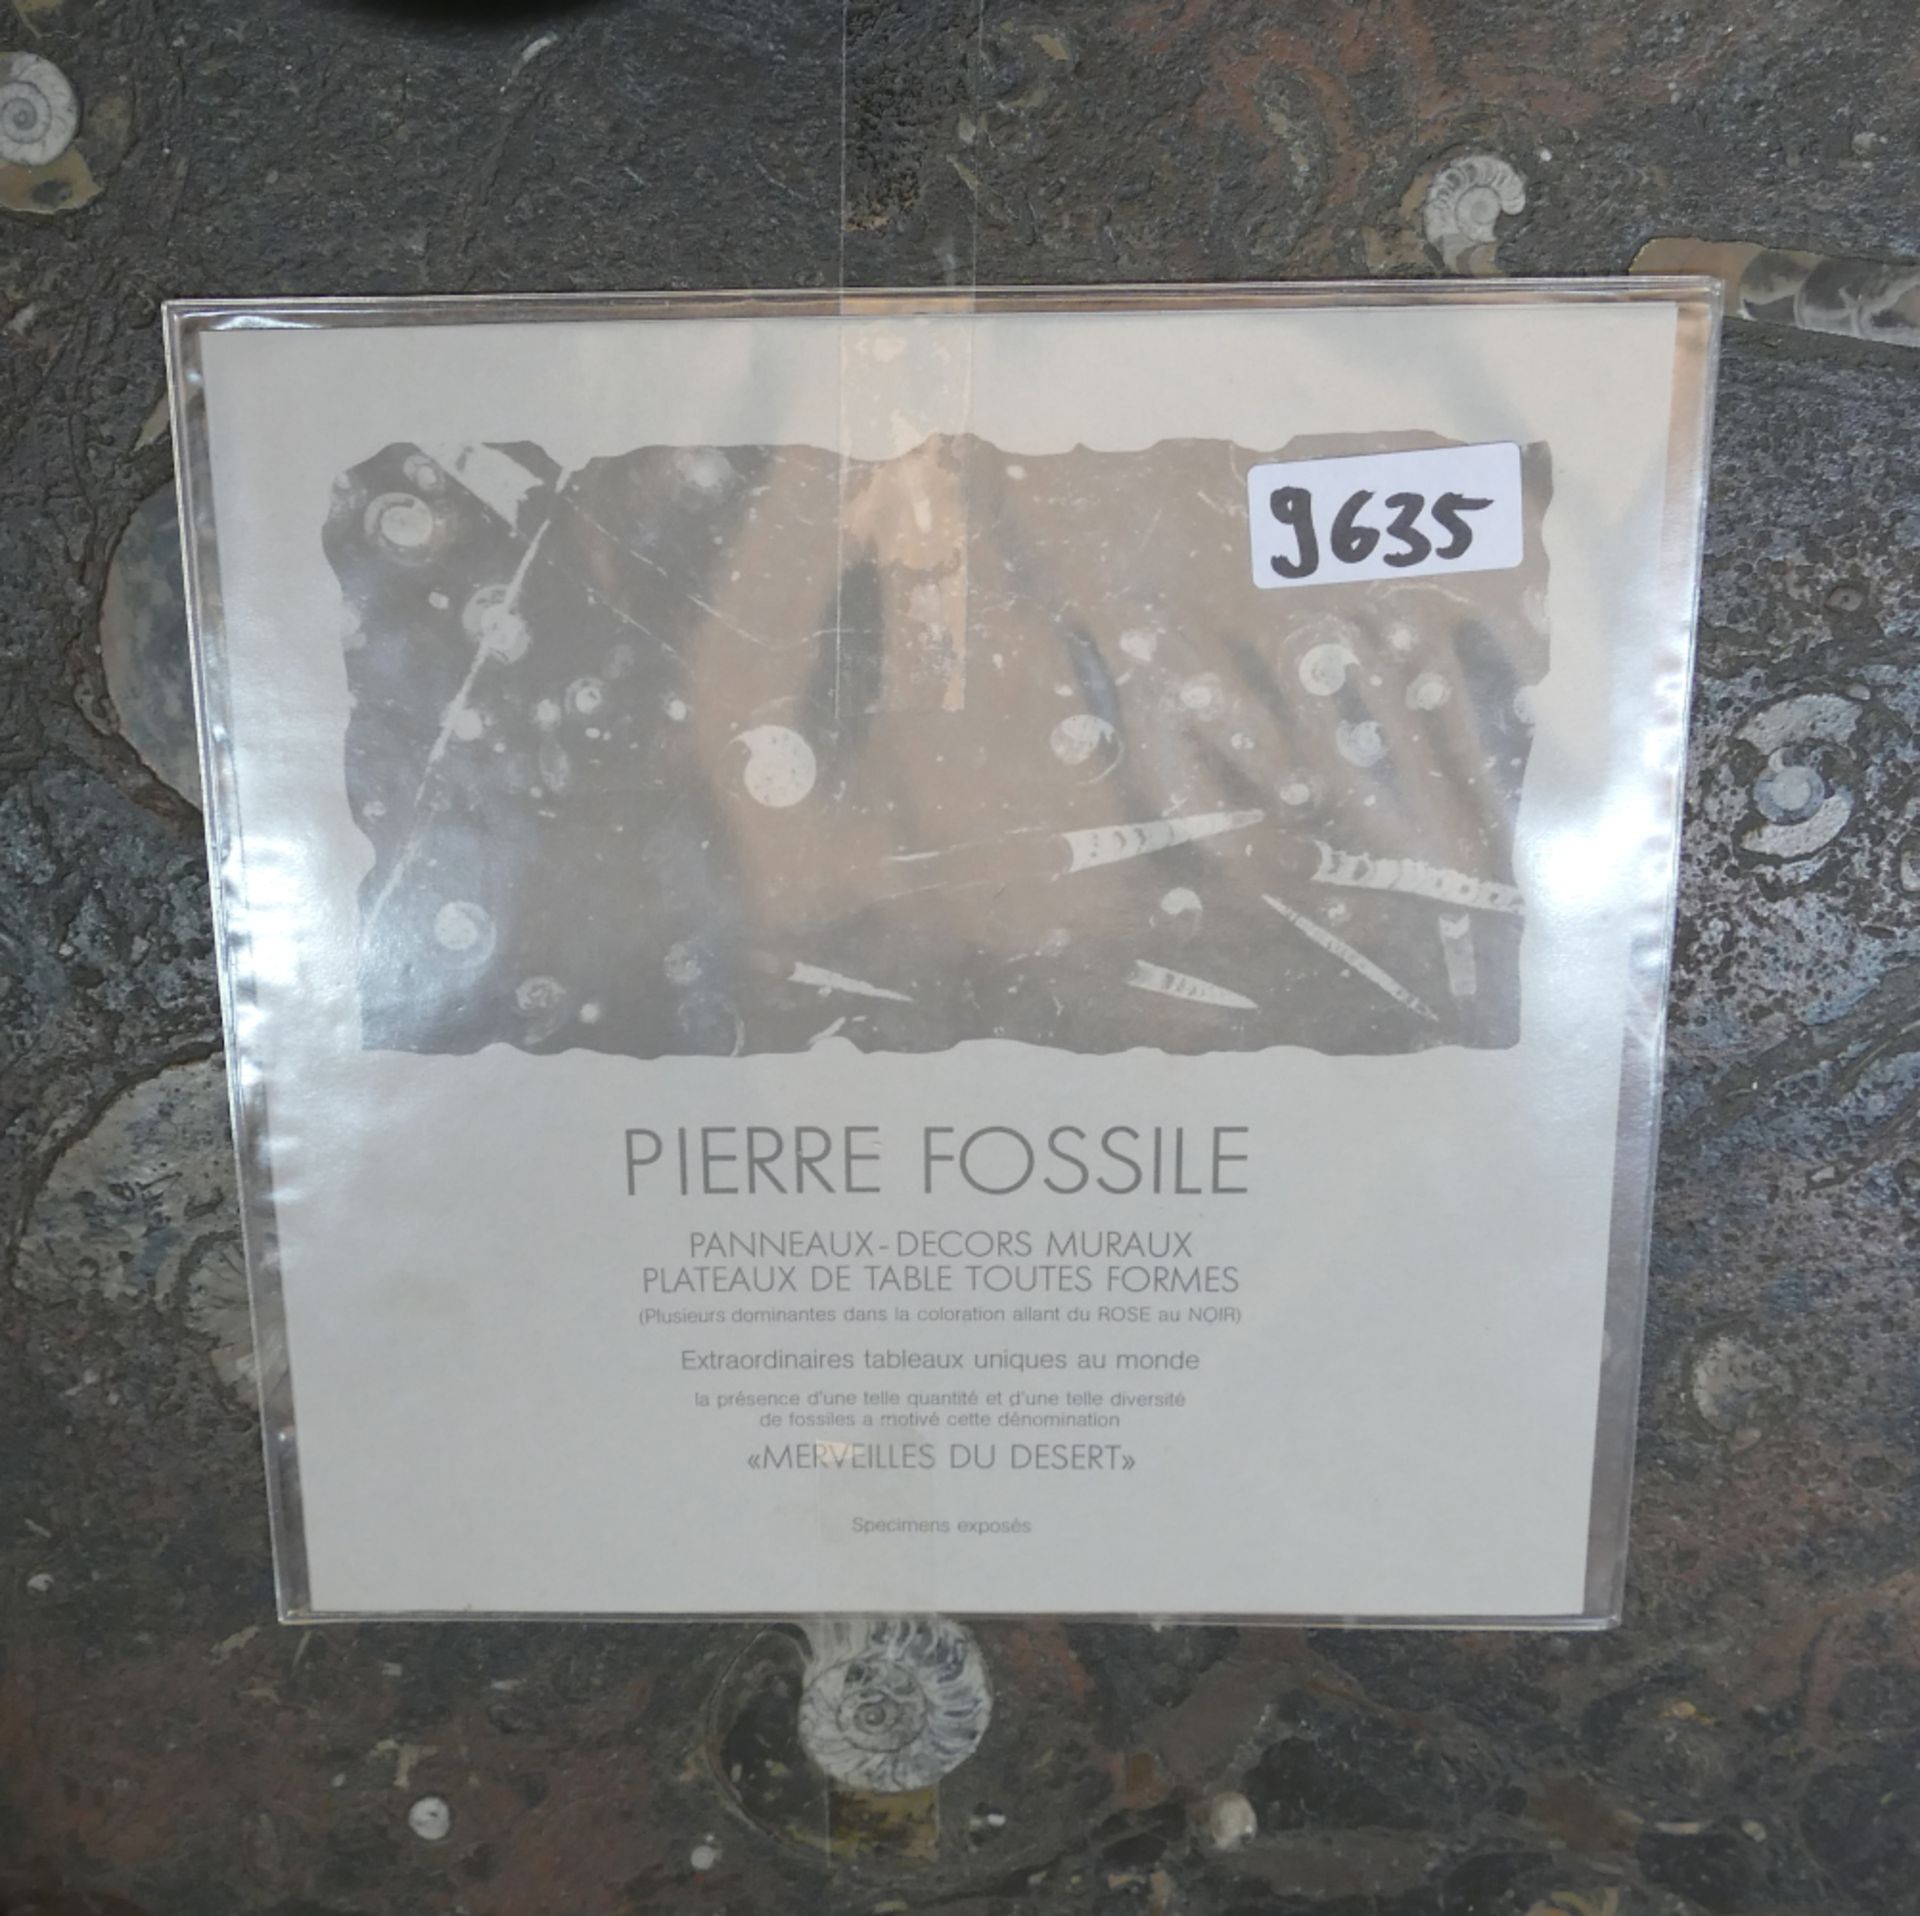 1 Couchtisch Heinz LILIENTHAL-Werkstätten "Pierre fossile: Merveilles du dessert" von 2014, num. 412 - Image 3 of 3